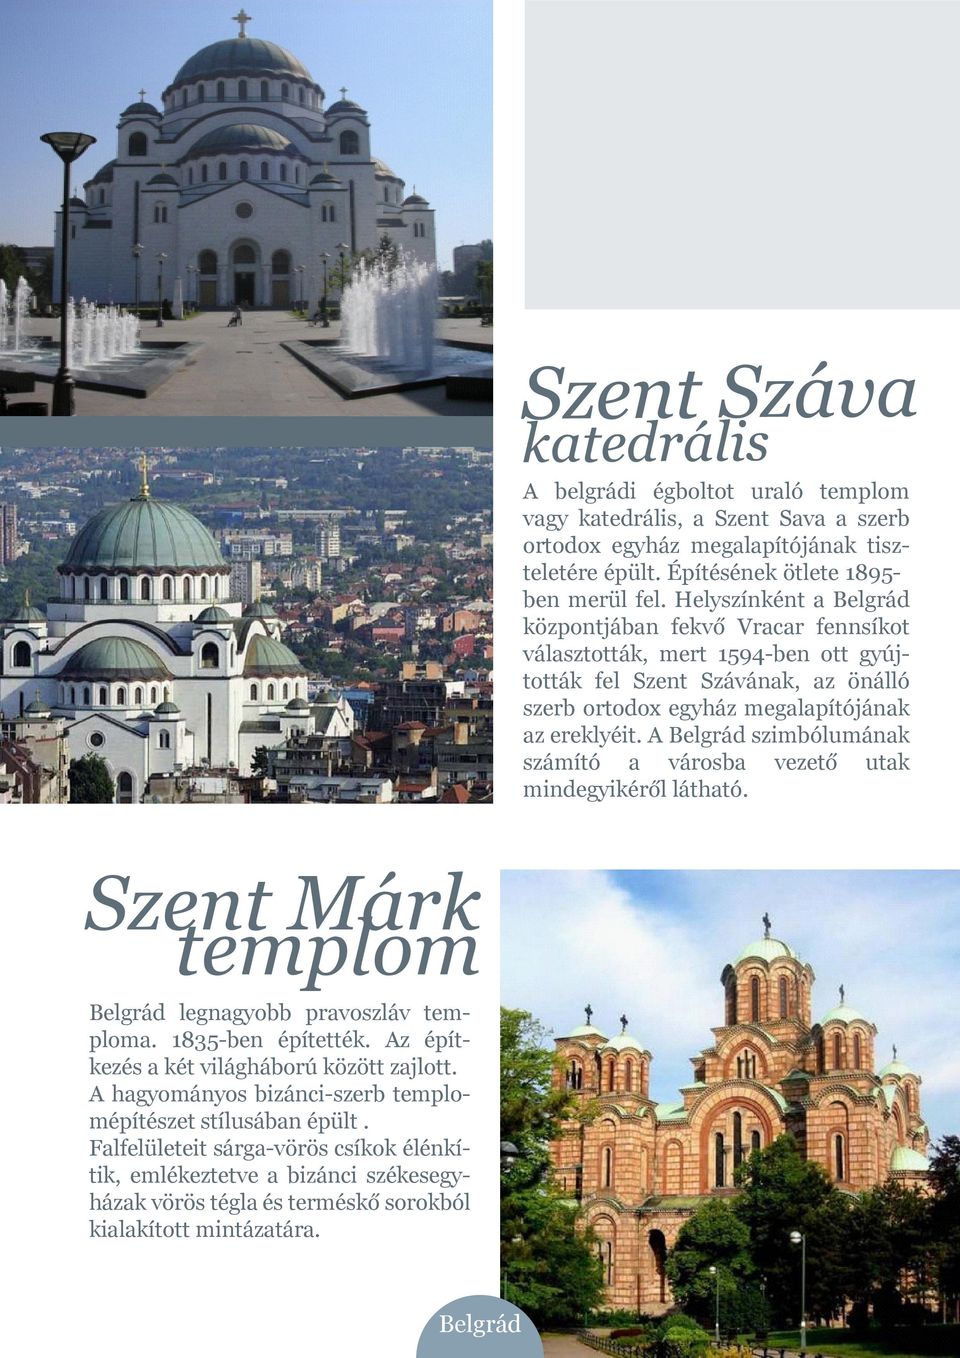 A Belgrád szimbólumának számító a városba vezető utak mindegyikéről látható. Szent Márk templom Belgrád legnagyobb pravoszláv temploma. 1835-ben építették.